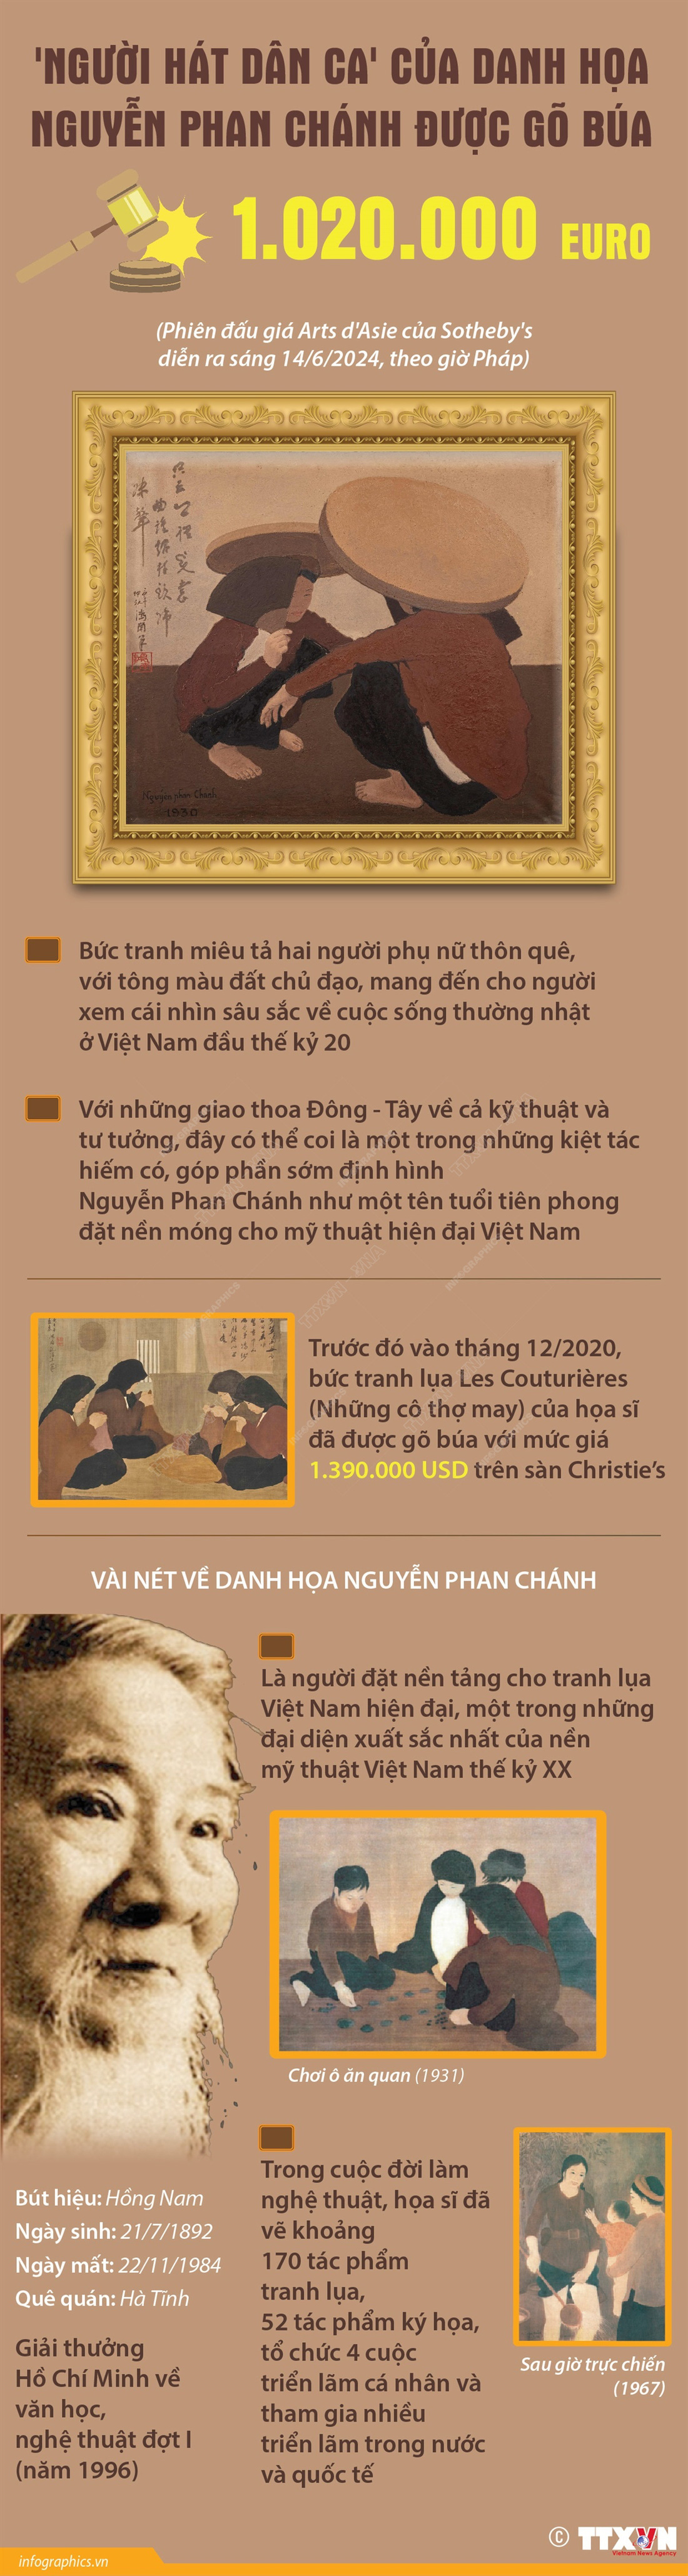 Đây là tác phẩm thứ hai của họa sĩ Nguyễn Phan Chánh đạt mốc triệu USD, sau bức tranh lụa Les Couturières (Những cô thợ may), được gõ búa 1.390.000 USD trên sàn Christie’s tháng 12-2020.